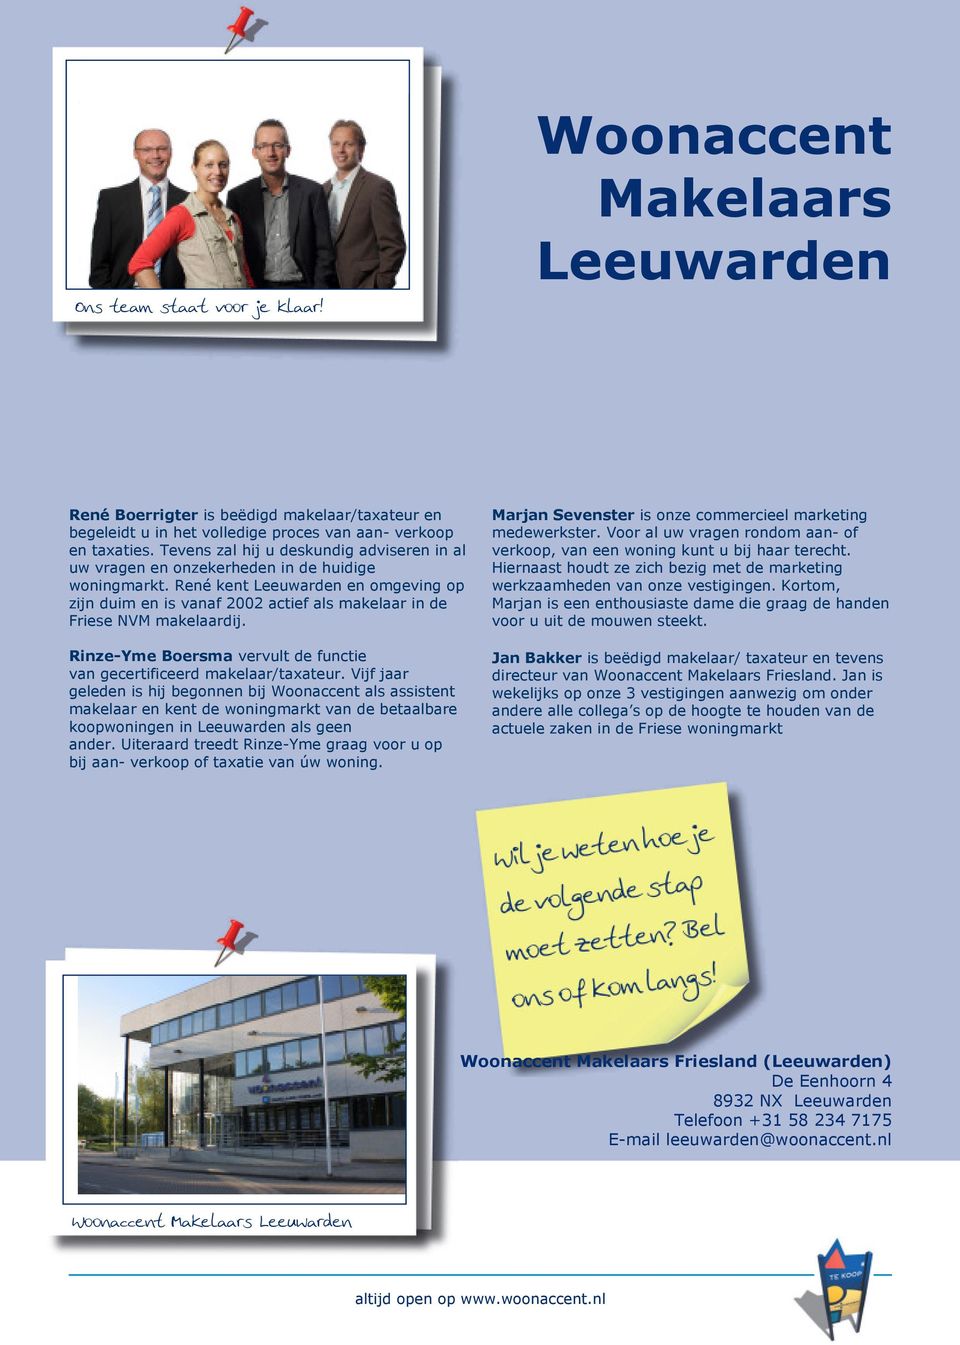 René kent Leeuwarden en omgeving op zijn duim en is vanaf 2002 actief als makelaar in de Friese NVM makelaardij. Rinze-Yme Boersma vervult de functie van gecertificeerd makelaar/taxateur.